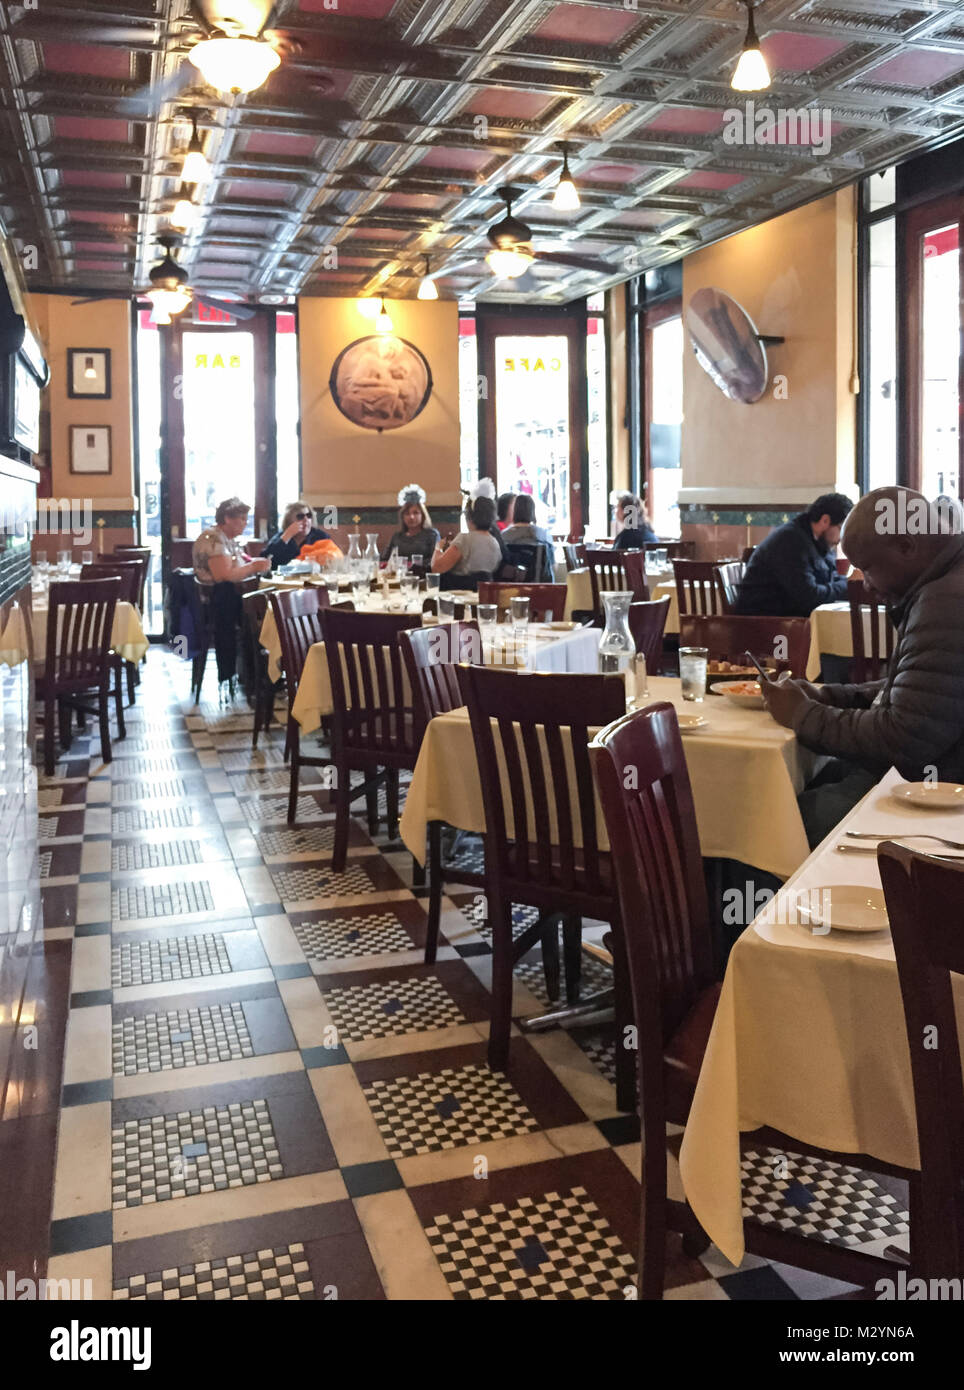 Interno della Grotta Azzurra in Little Italy quartiere, Manhattan, New York City. Persone per mangiare fuori in un tradizionale ristorante italiano. Foto Stock